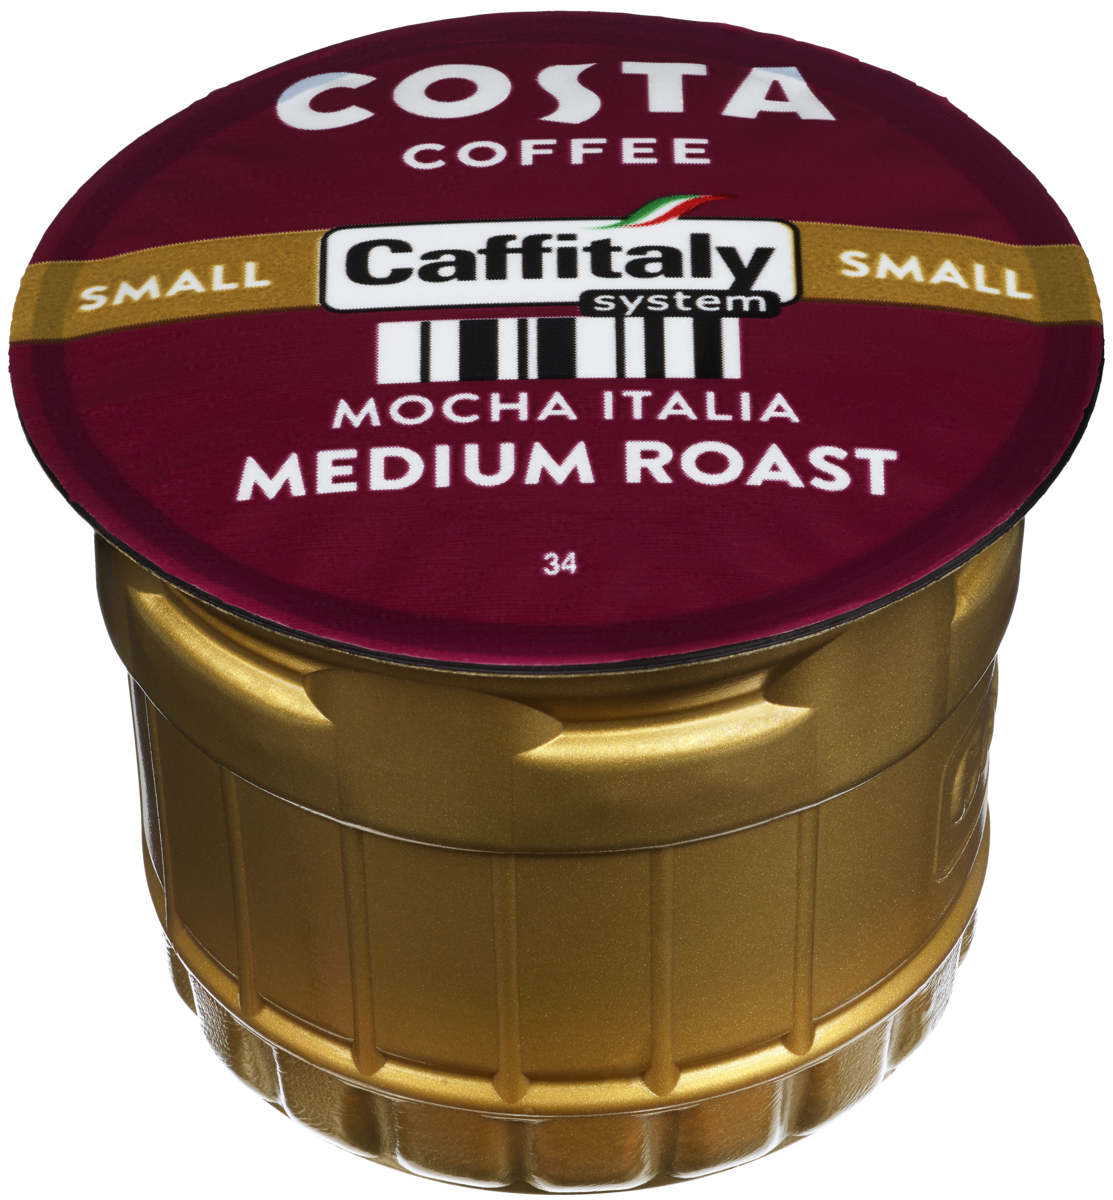 Costa mocha italia med pod small 8.5g x48  600g